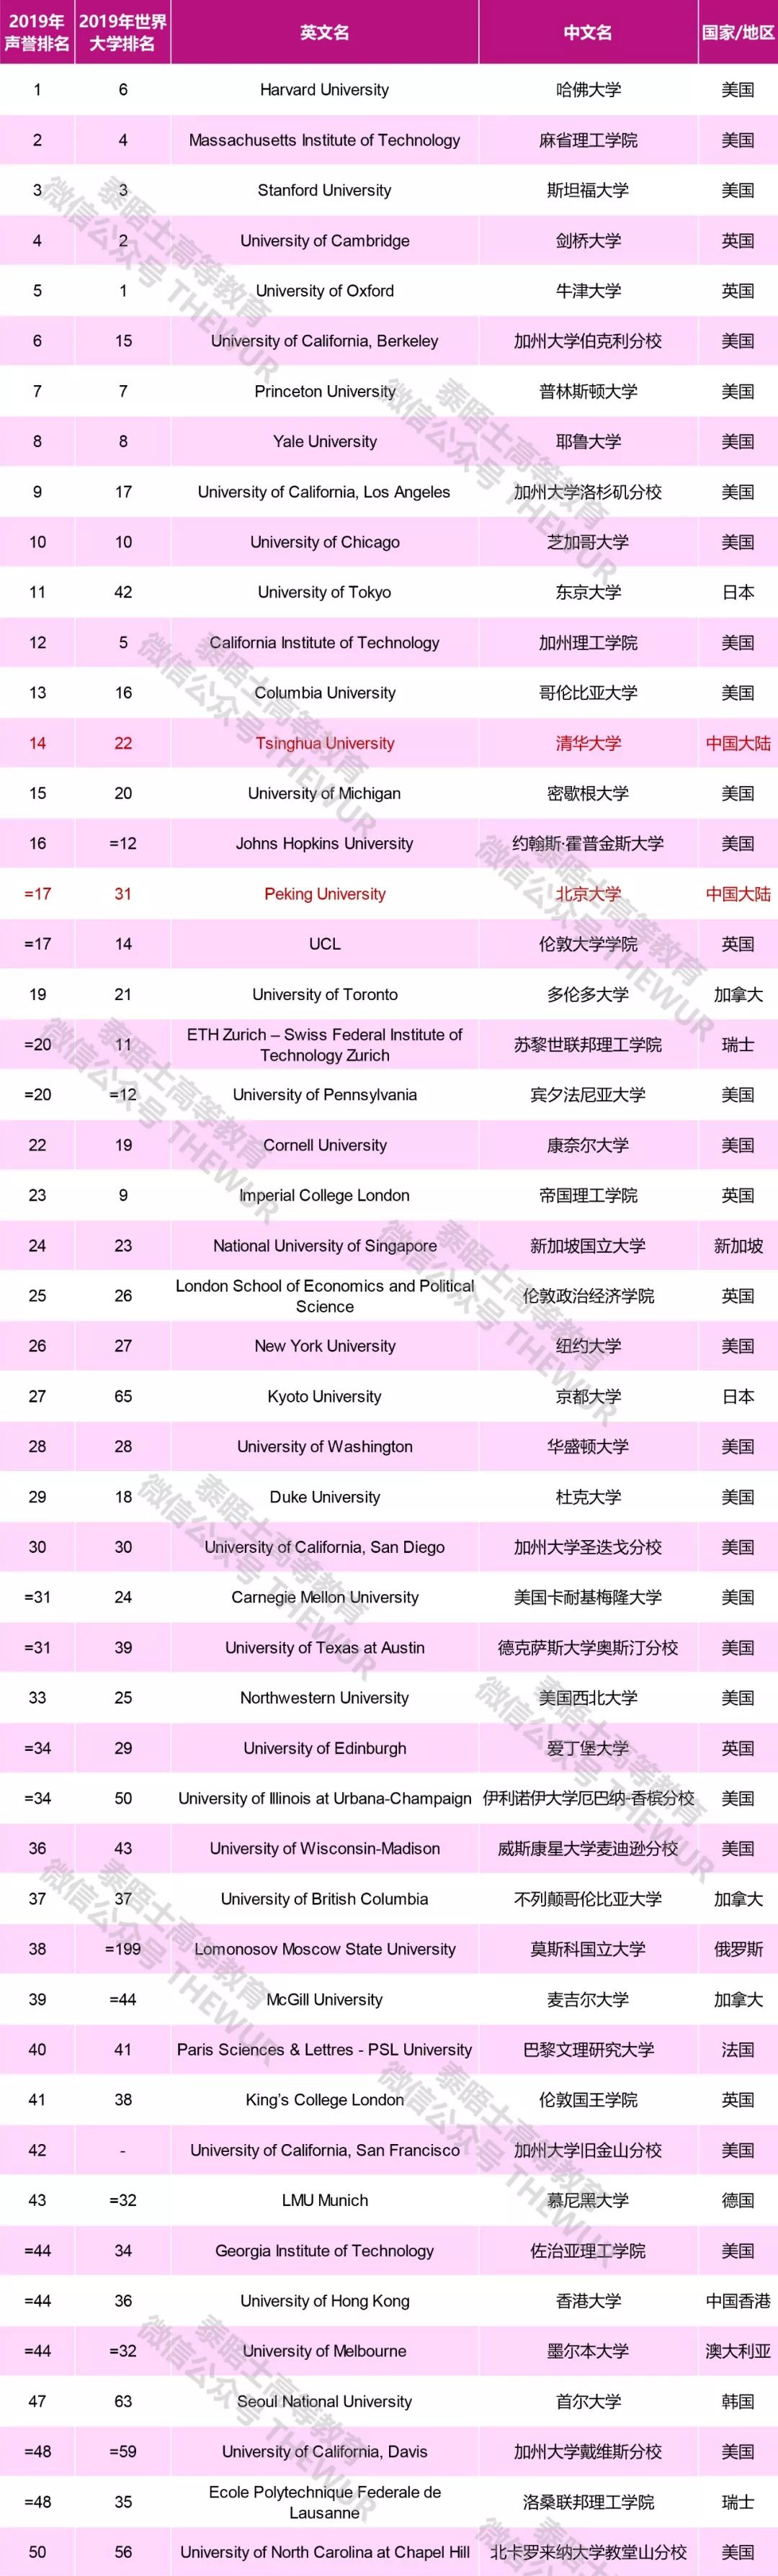 2019THE世界大学声誉排名 6所中国大陆高校进入前100